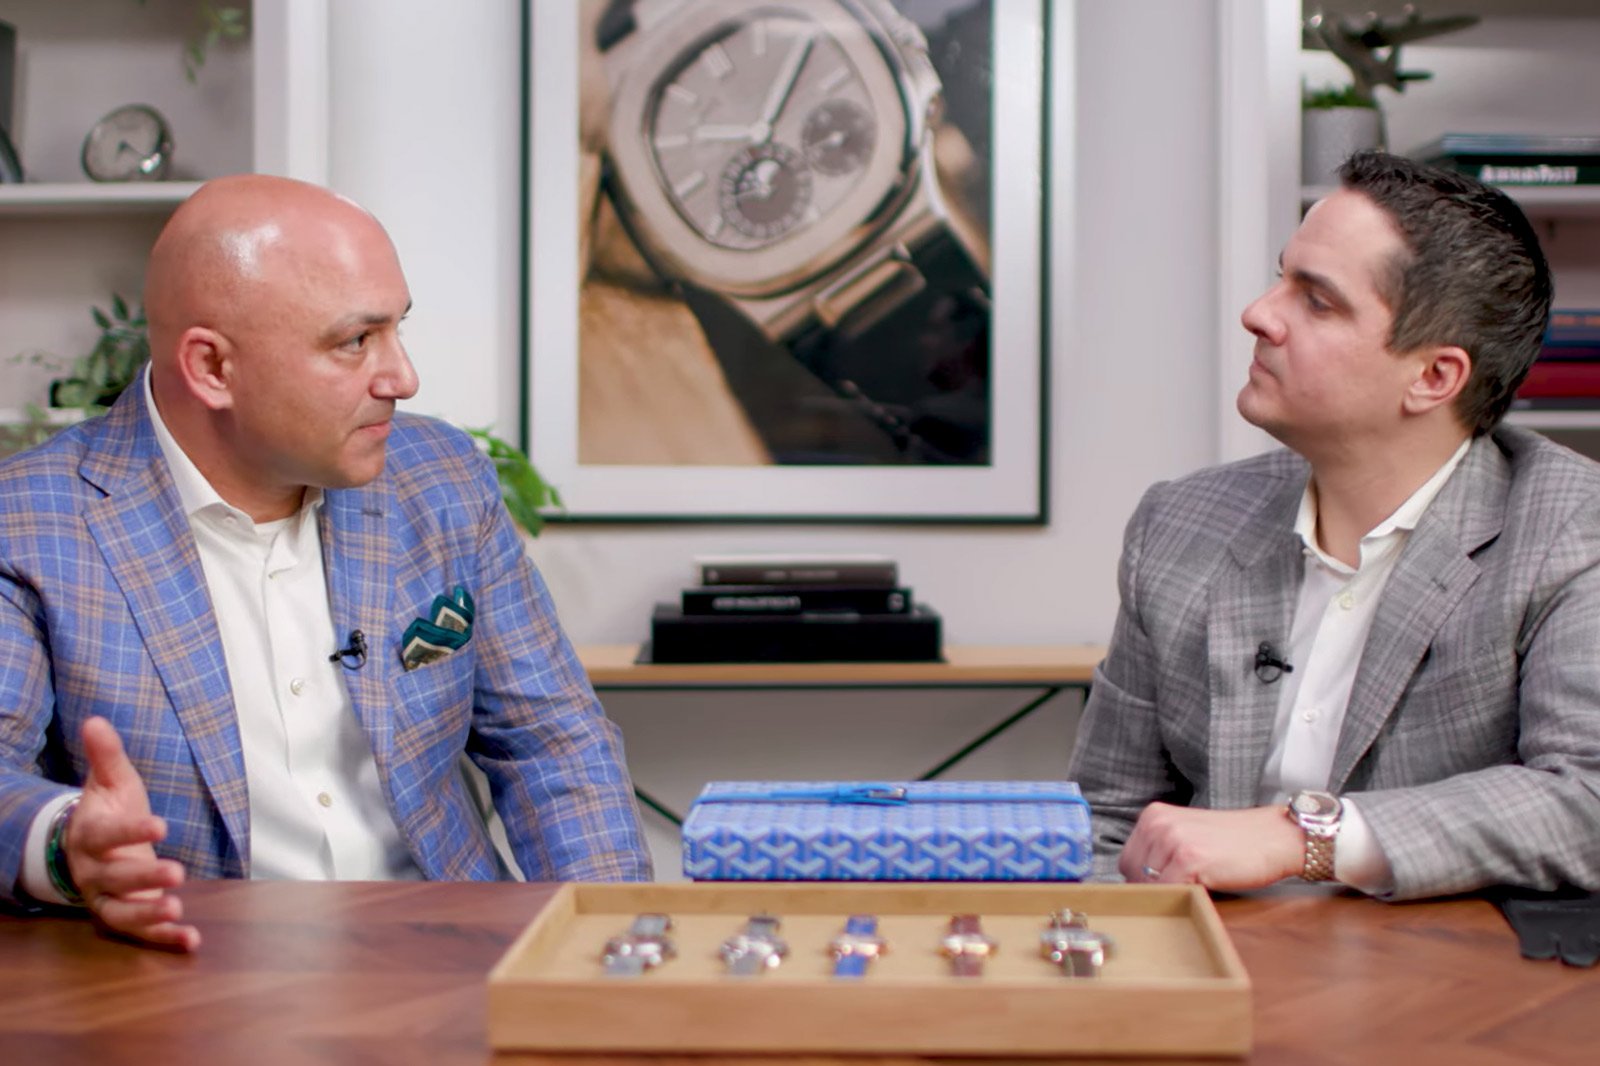 Phỏng vấn Mike Shani – nhà sưu tầm dành tình yêu lớn cho đồng hồ độc lập